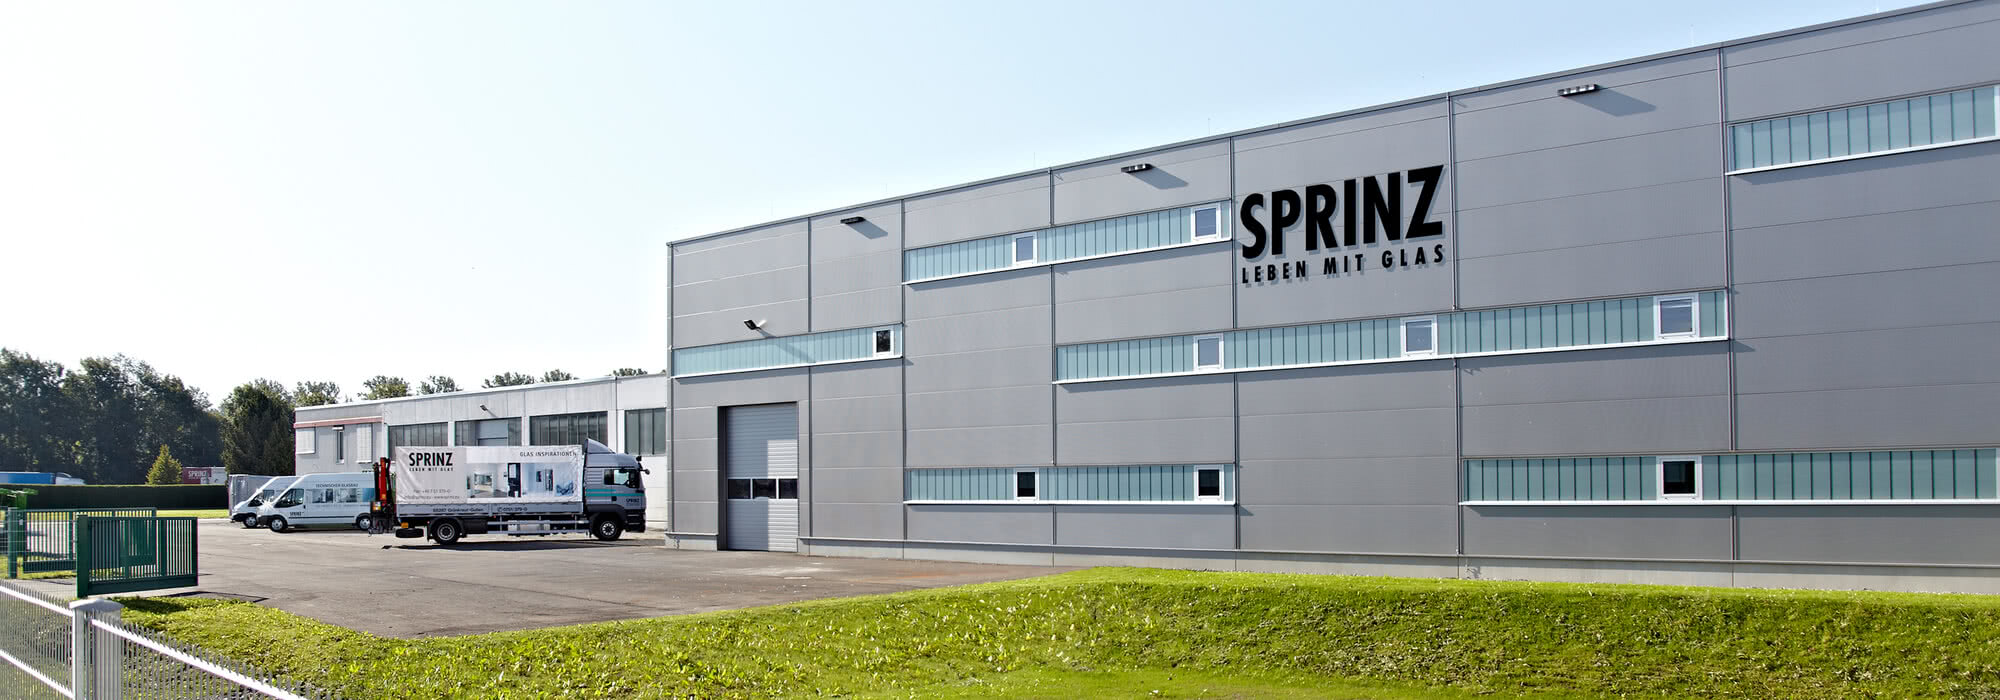 Unternehmen Sprinz am Standort Grünkraut-Gullen